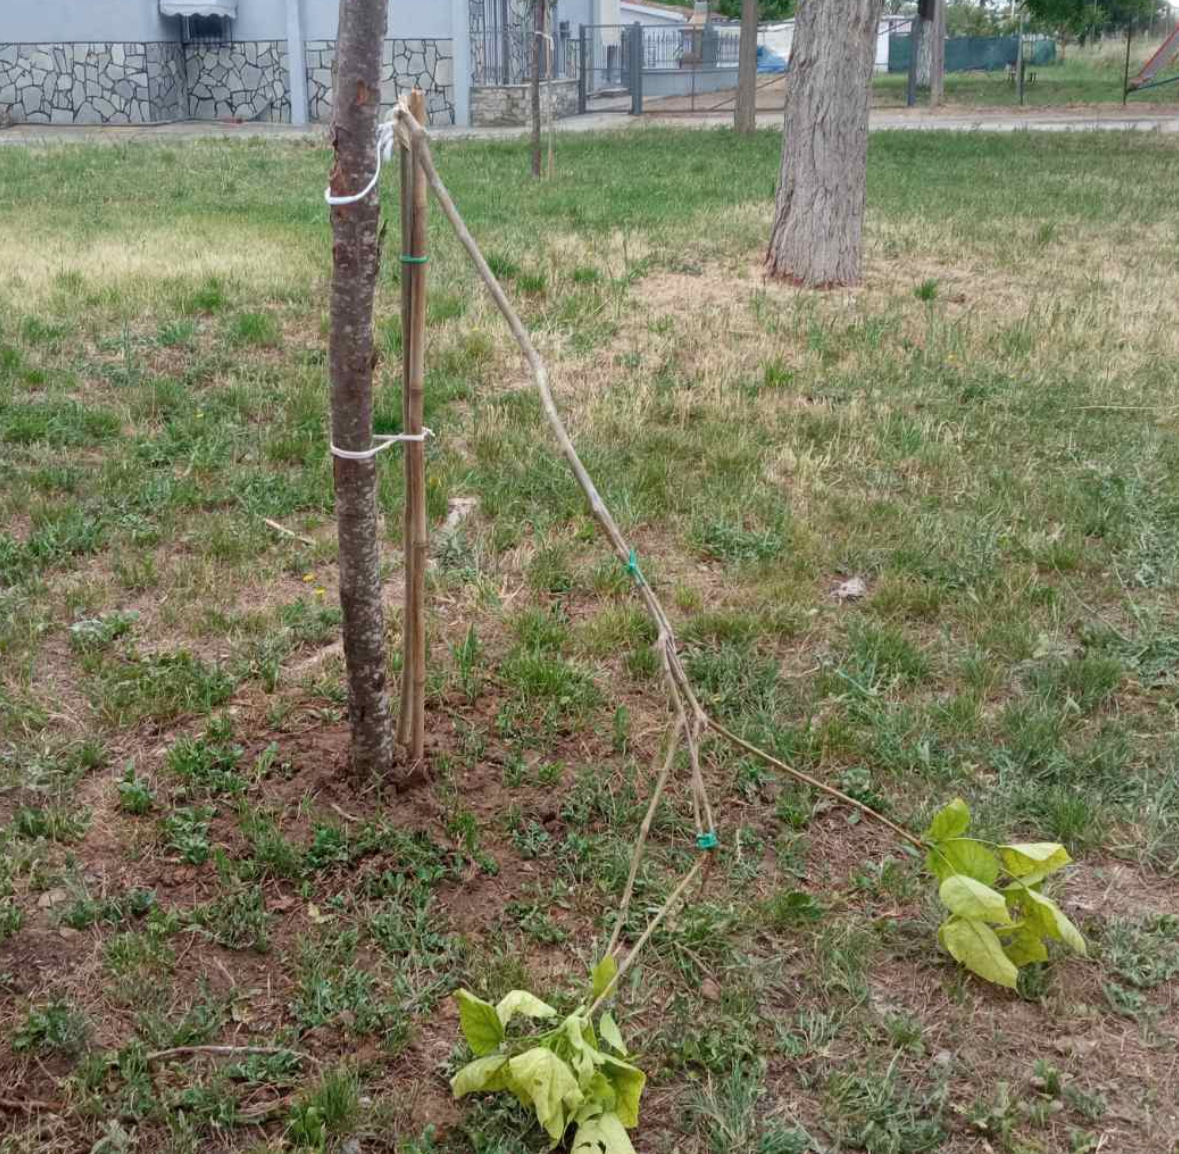 εύοσμος: άγνωστοι ξερίζωσαν δέντρα που είχαν φυτευτεί για τα θύματα των τεμπών